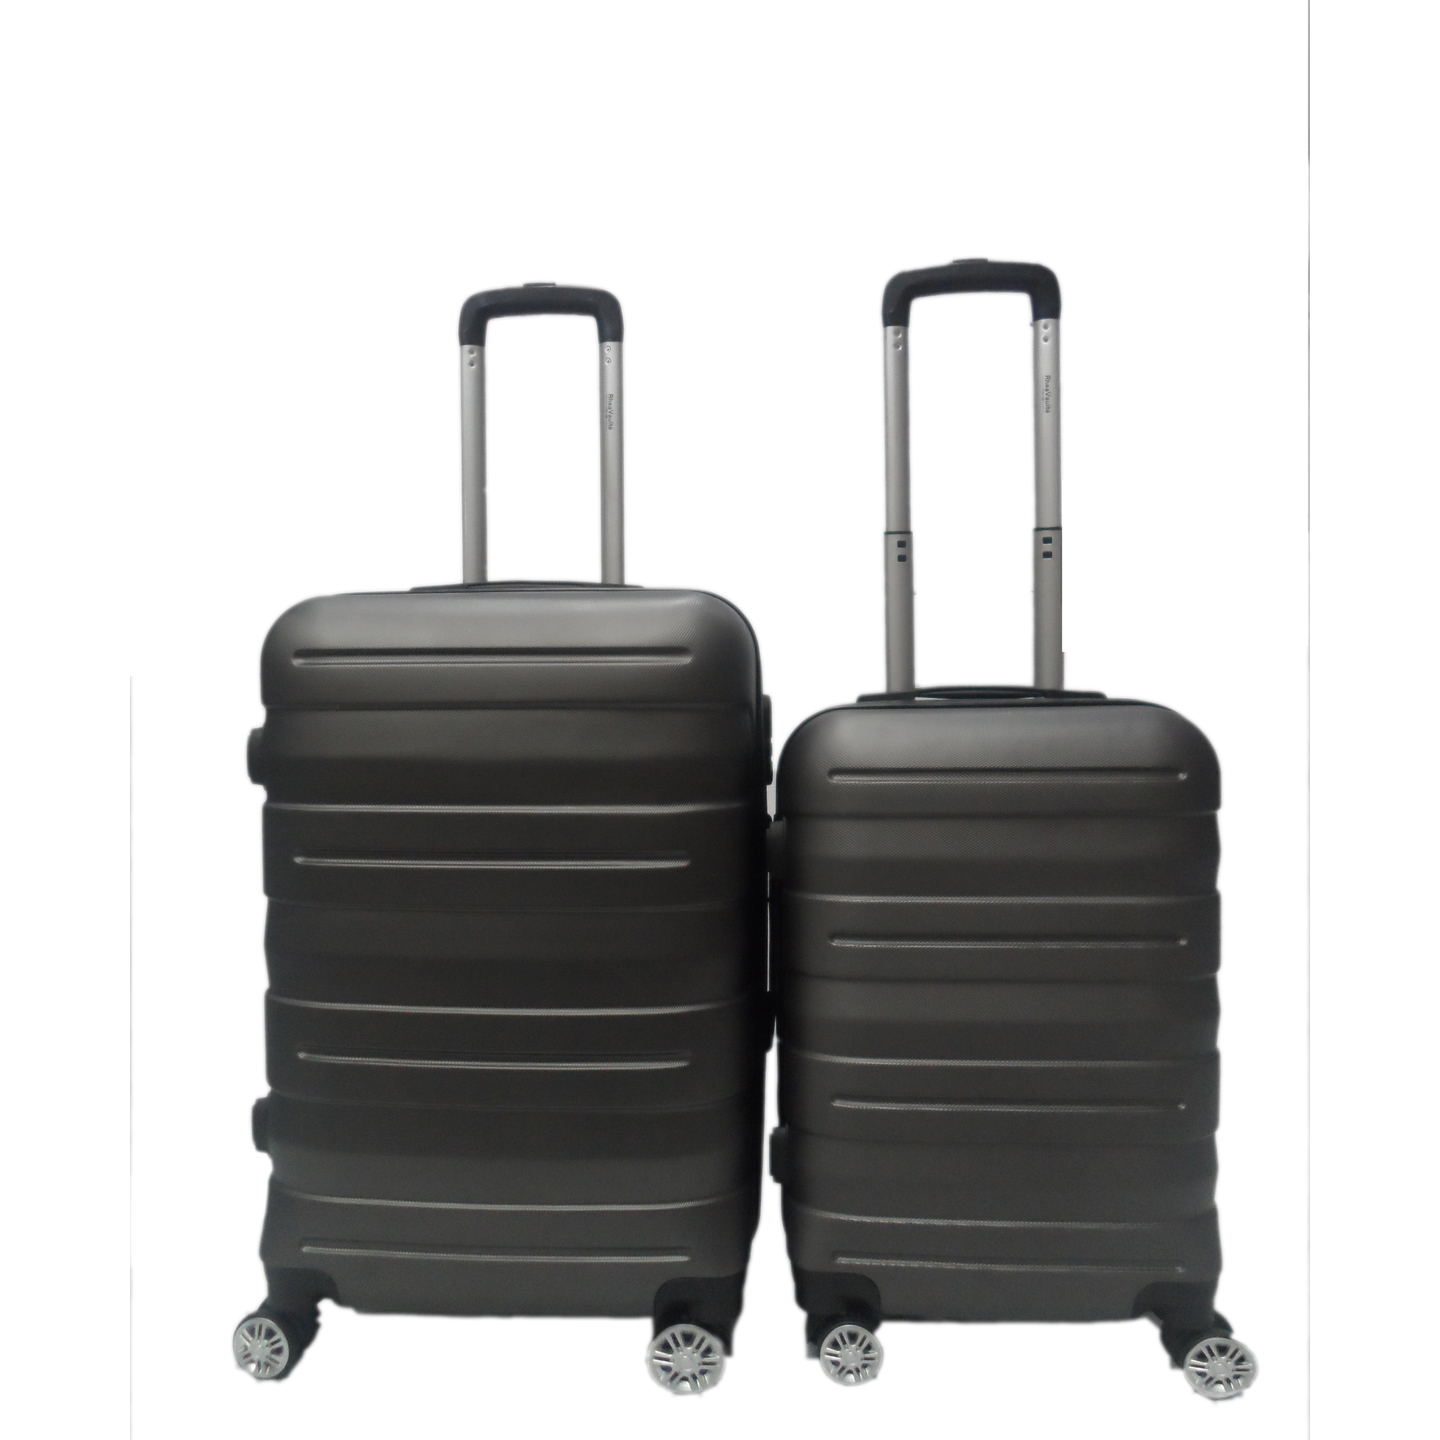 RV-131 Elegant Hard Box Luggage - Grey 20 inch and 24 inch